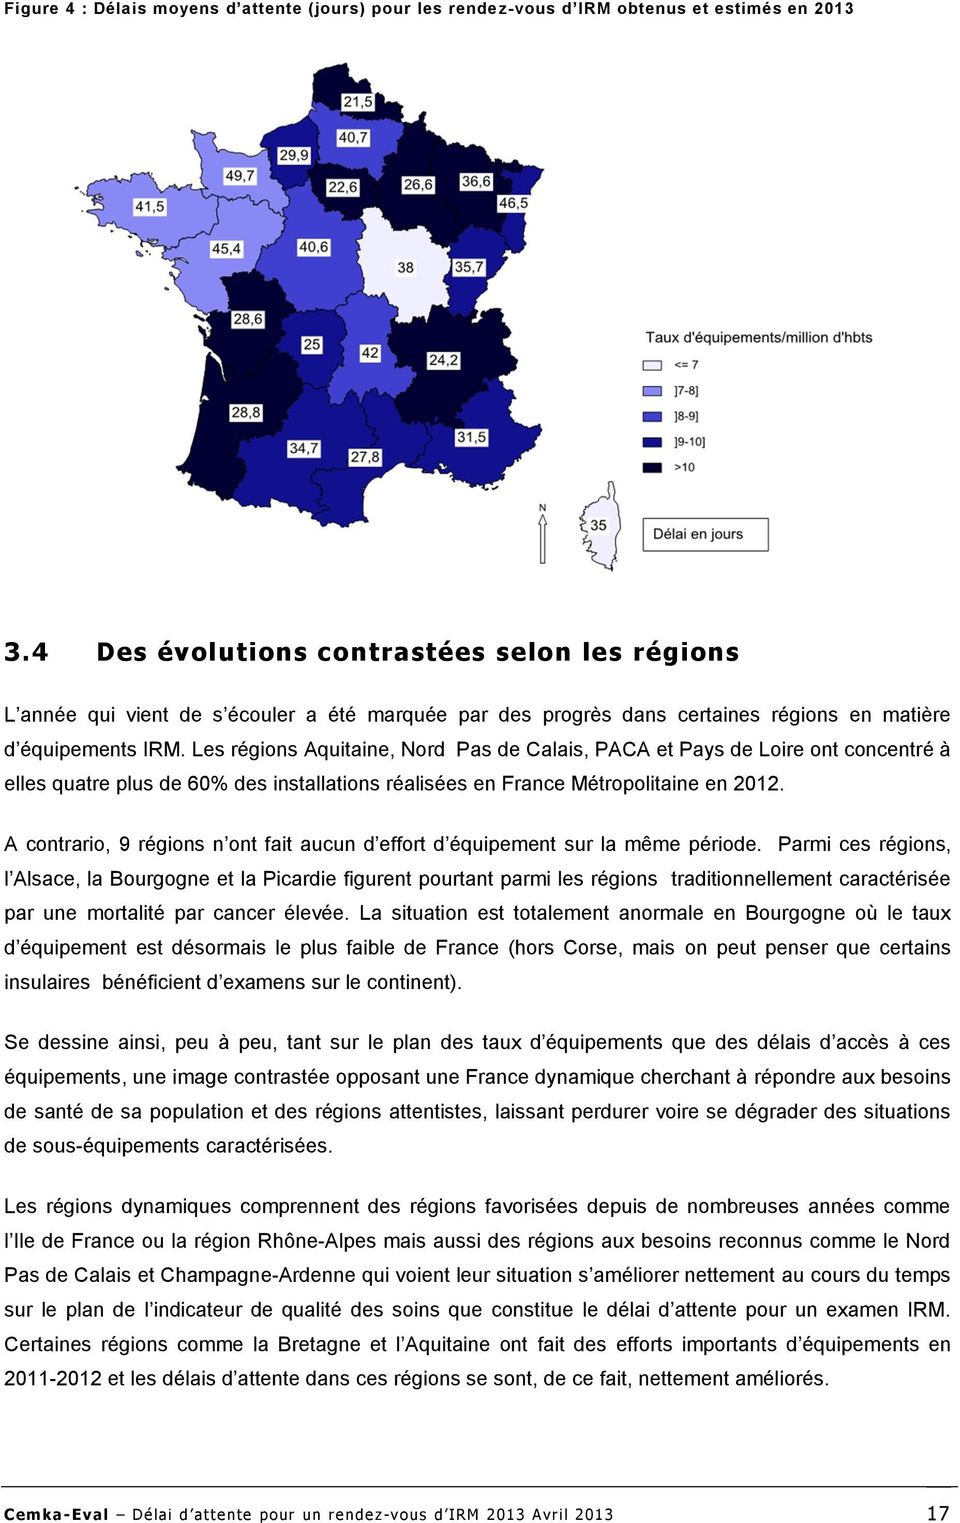 Les régions Aquitaine, Nord Pas de Calais, PACA et Pays de Loire ont concentré à elles quatre plus de 60% des installations réalisées en France Métropolitaine en 2012.